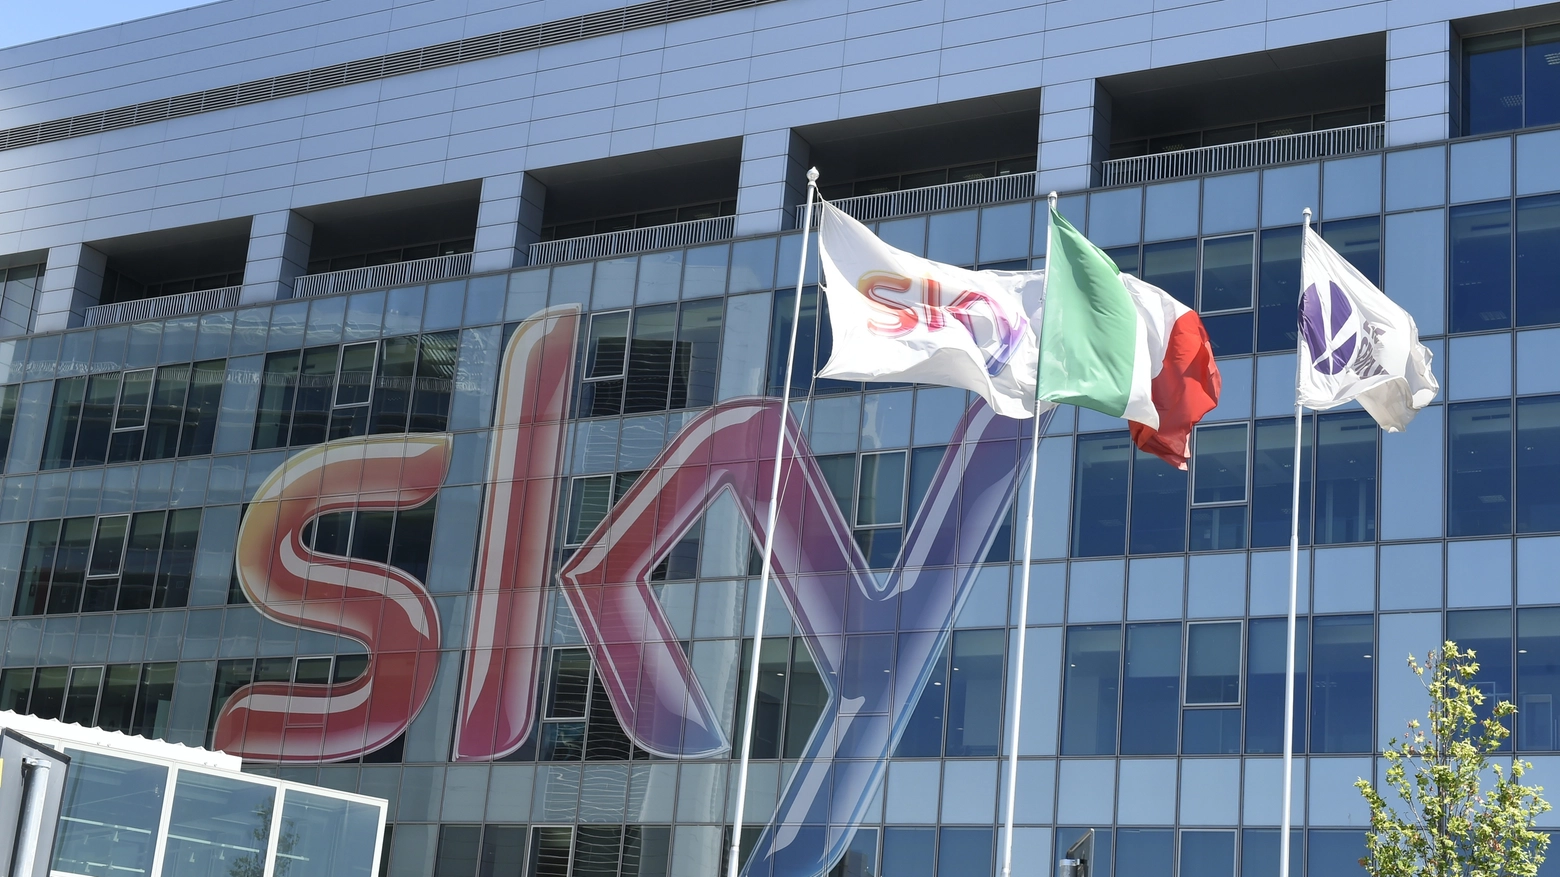 La sede di Sky Italia